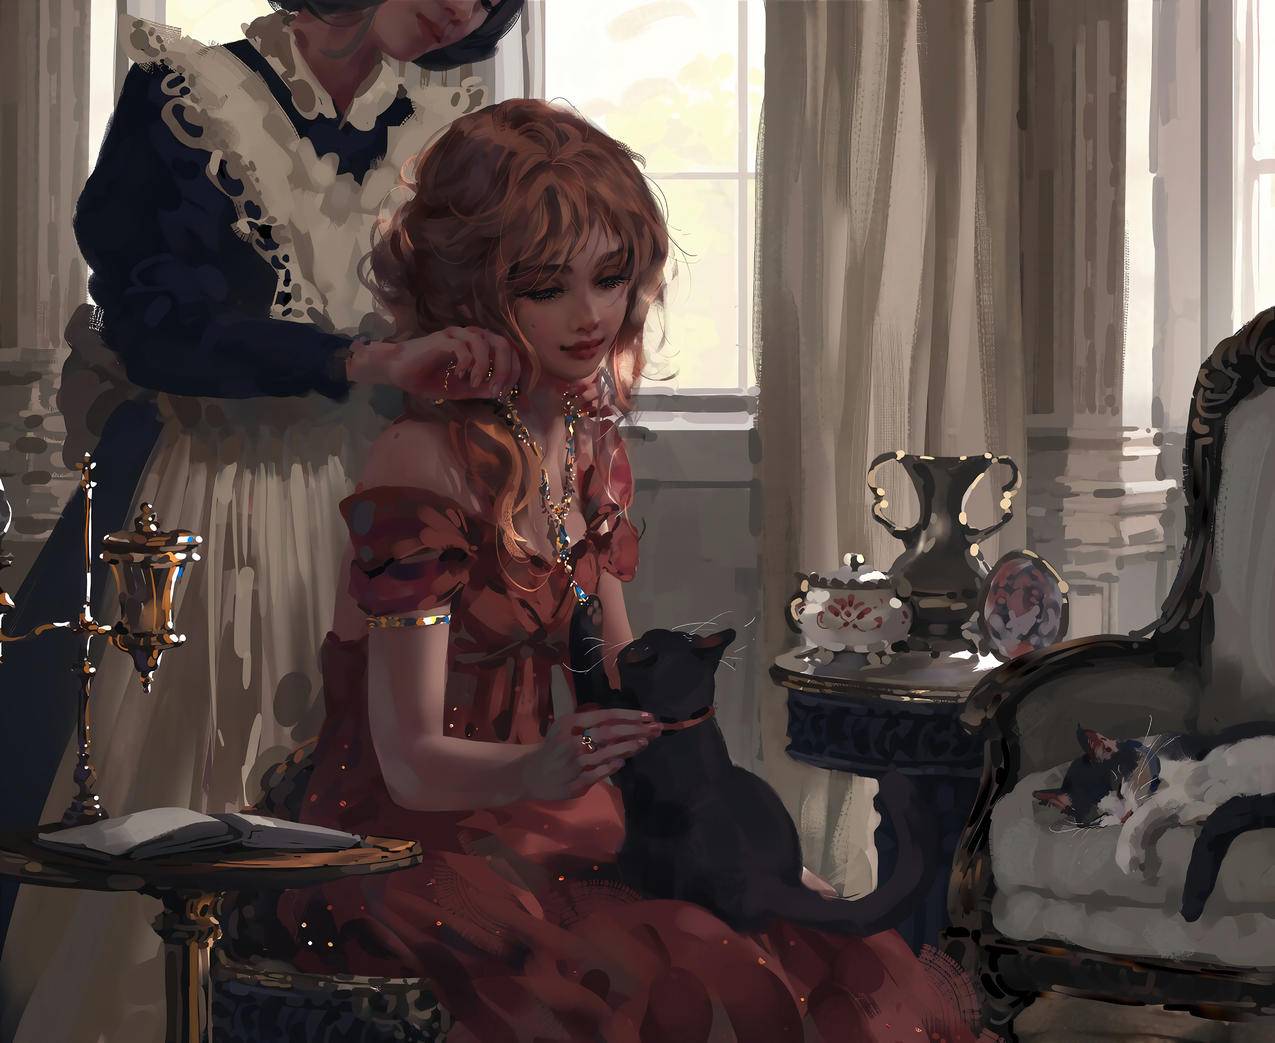 女仆 女孩 精致 红裙 猫 沙发 项链 茶具 书 4K高清动漫壁纸